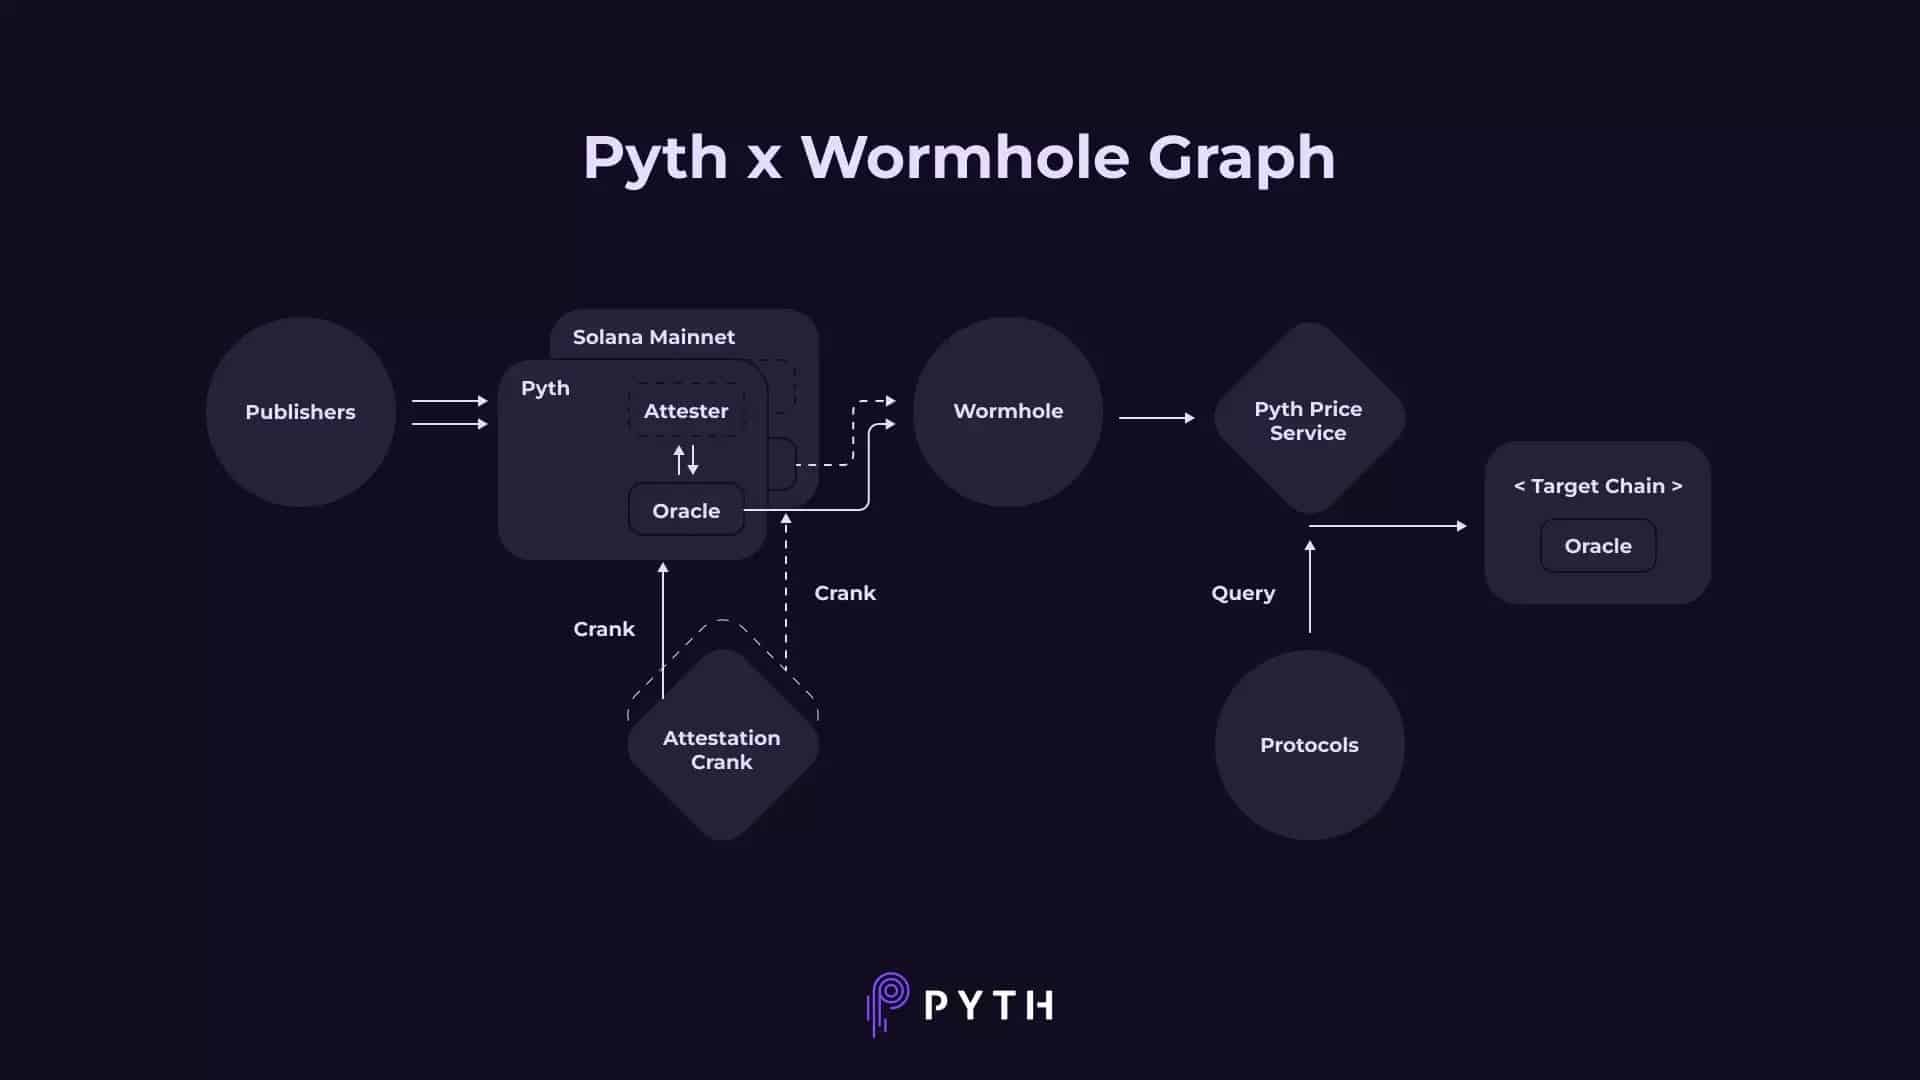 Esquema da transferência de dados através da Pyth Network e do protocolo Wormhole